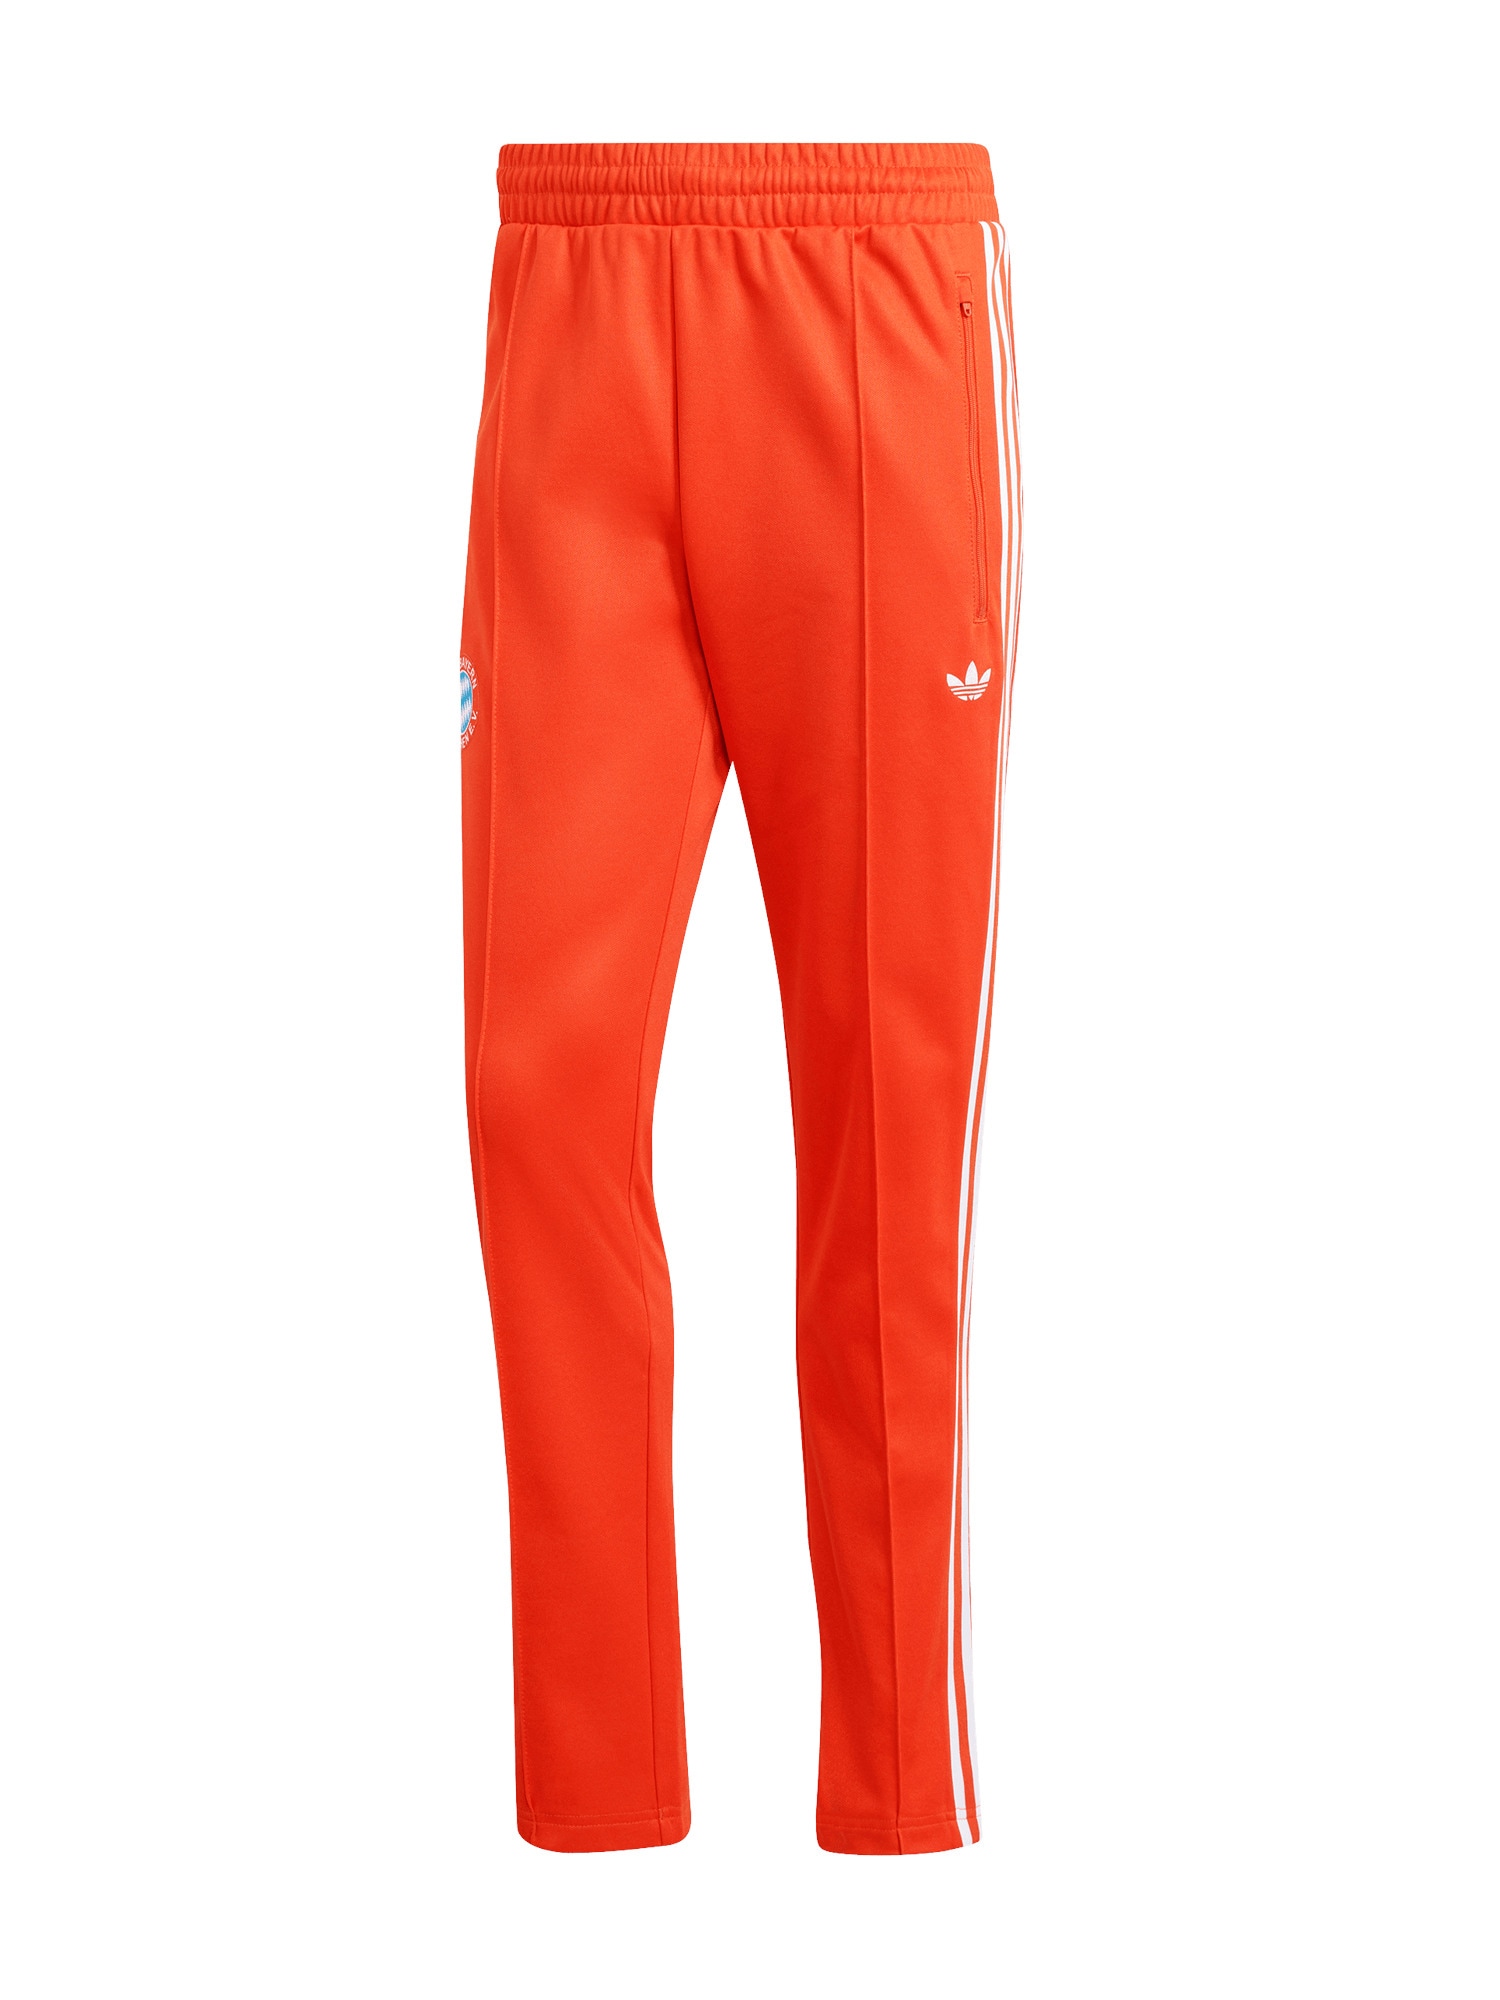 ADIDAS PERFORMANCE Športové nohavice 'FCB'  oranžovo červená / biela